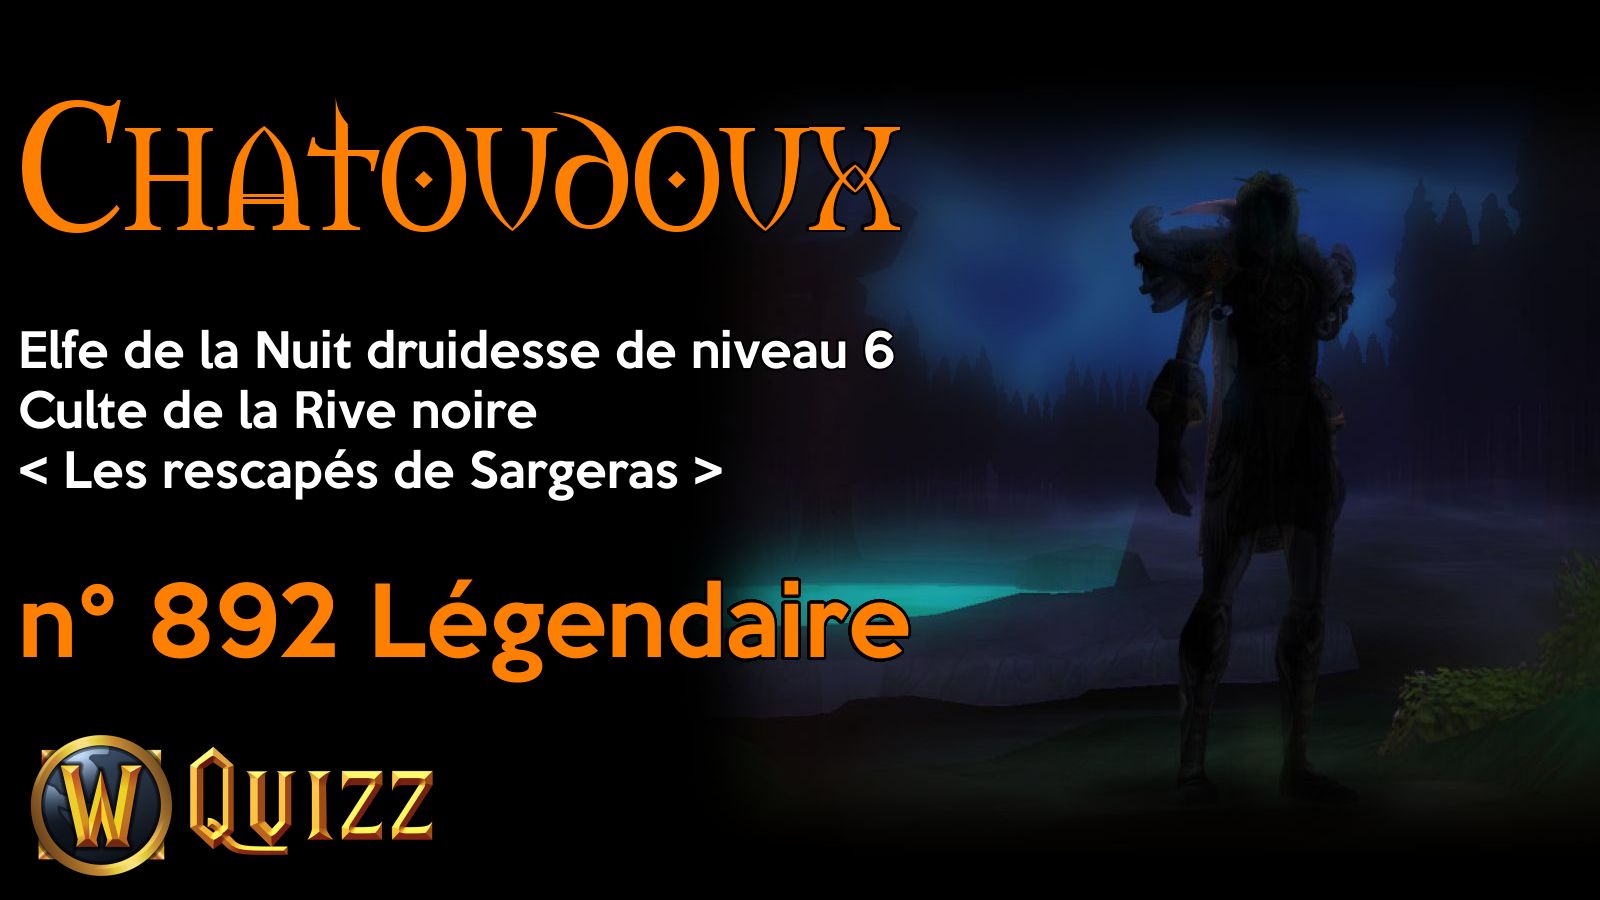 Chatoudoux, Elfe de la Nuit druidesse de niveau 6, Culte de la Rive noire